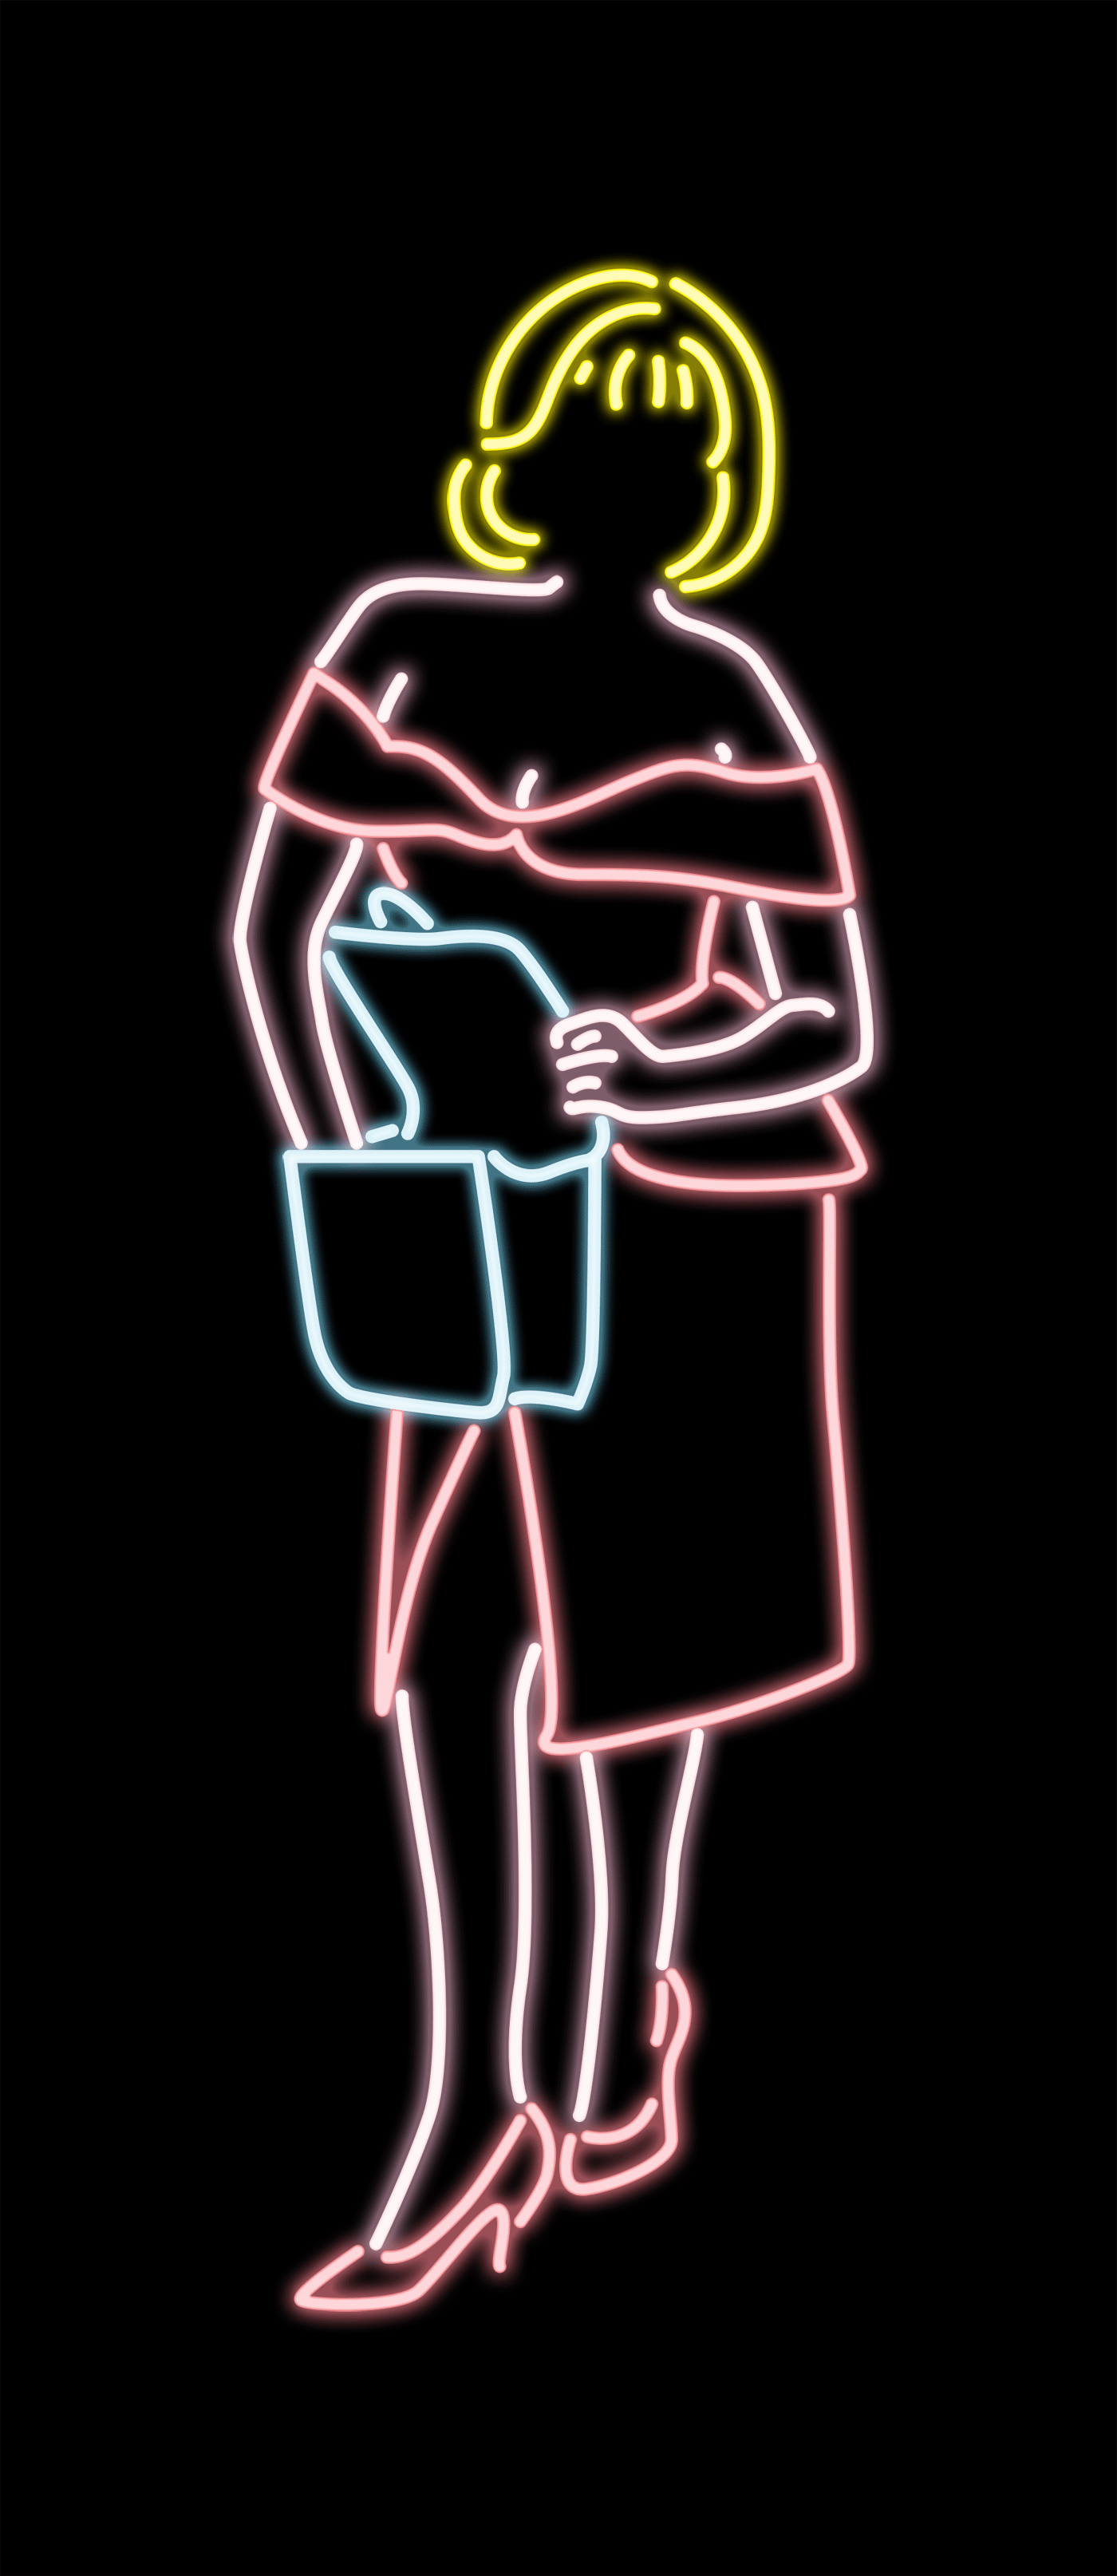 via giphy inspiration pinterest neon animated gif and medium